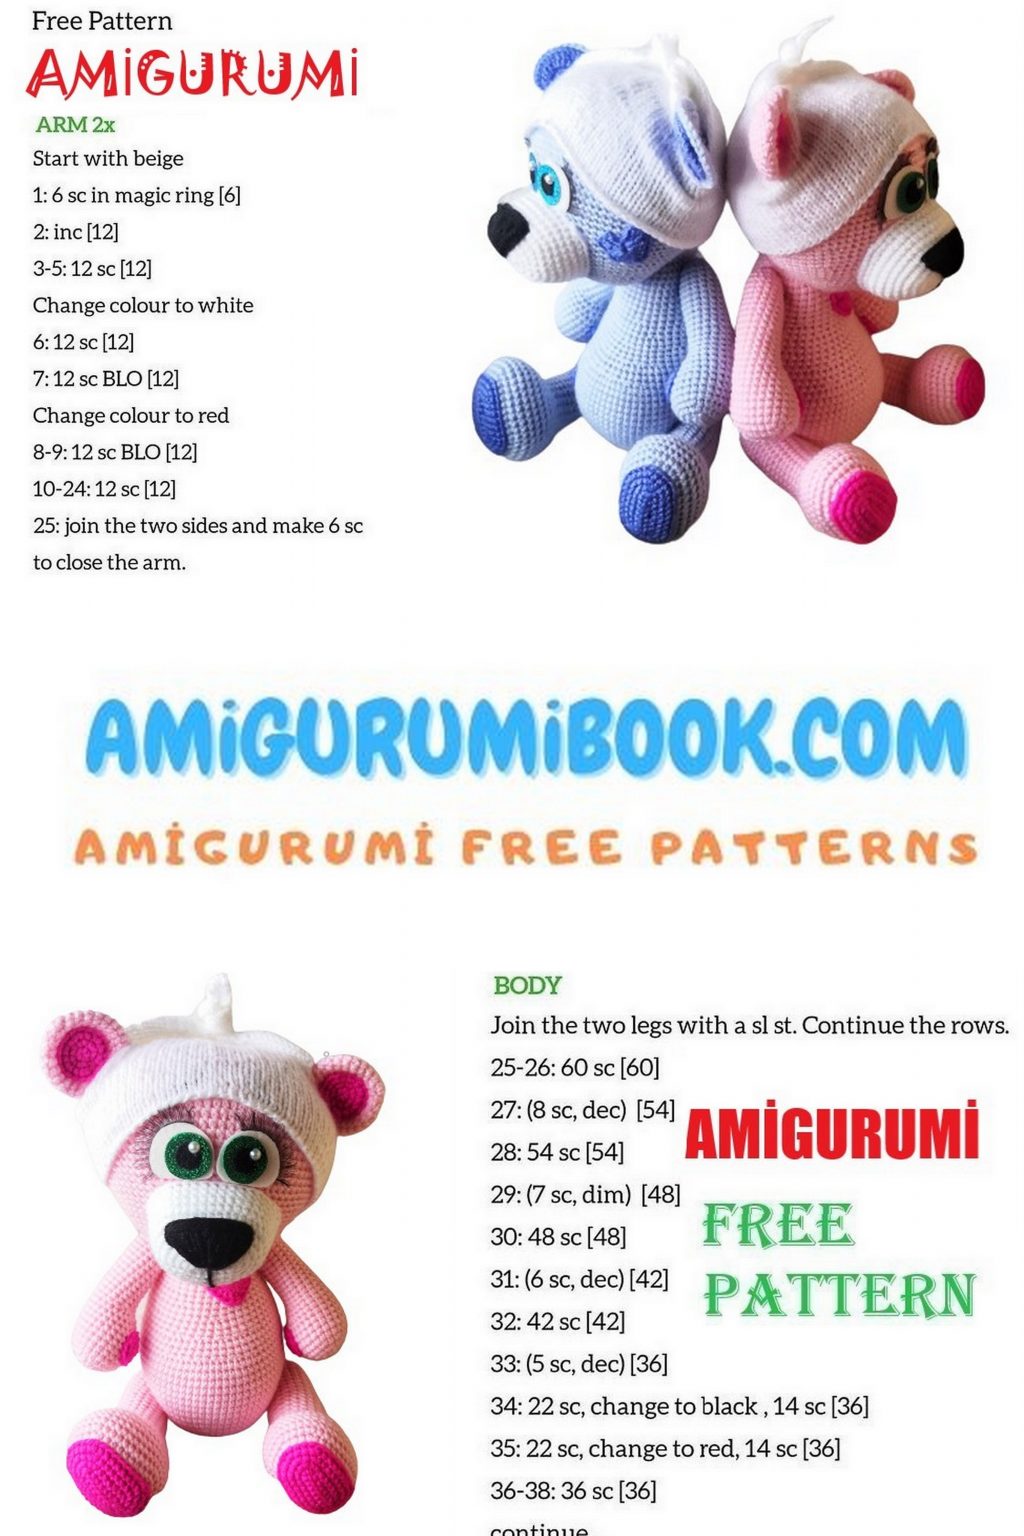 Sweetheart Teddy Bears Amigurumi Free Patterns - Free Amigurumi Crochet ...